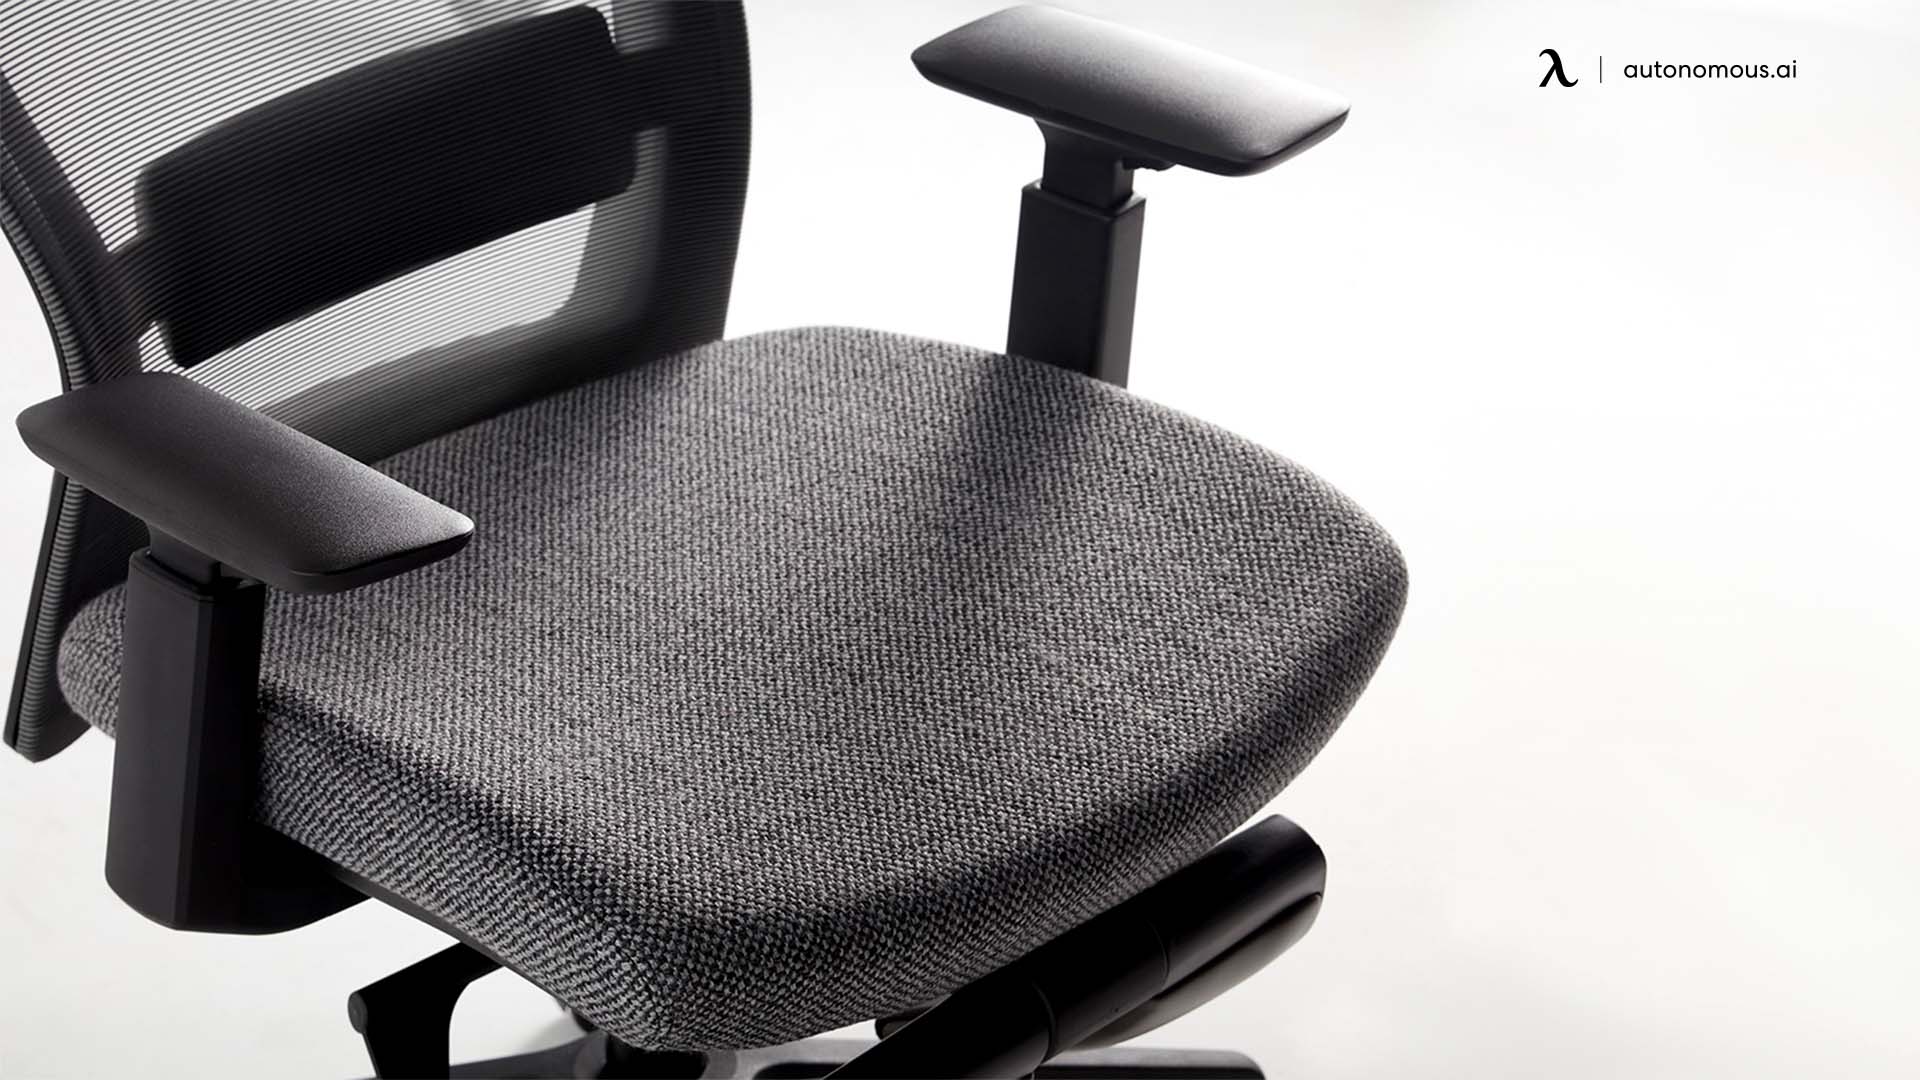 Lumbar Support of modern desk chair